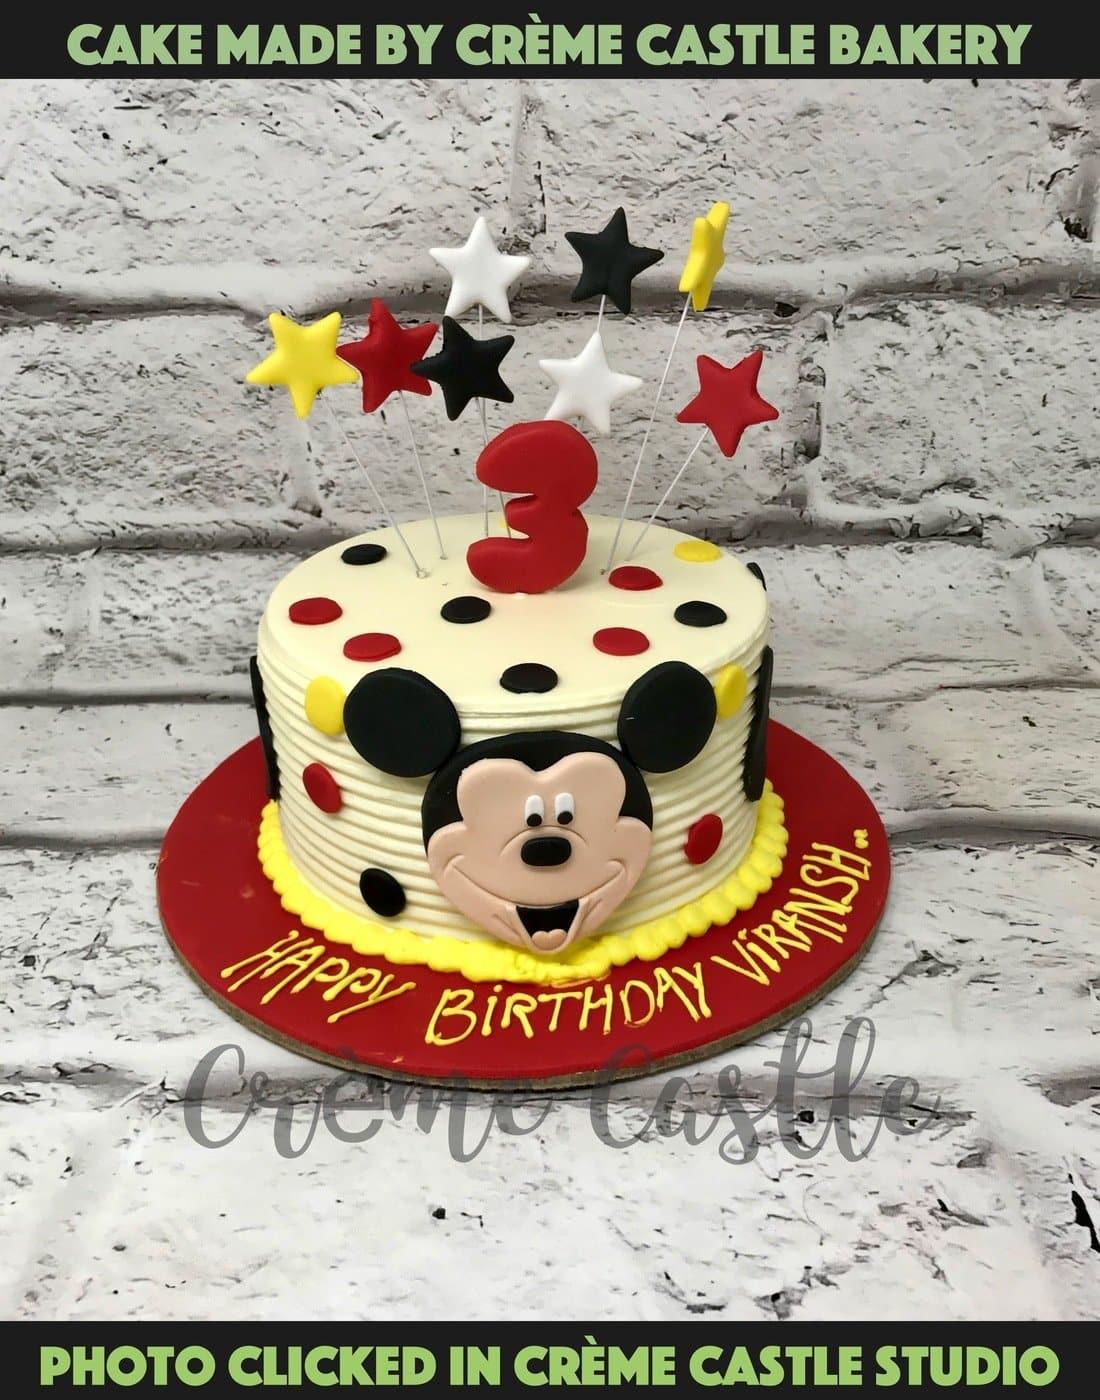 Eash cakes - Panda face cake design | Facebook